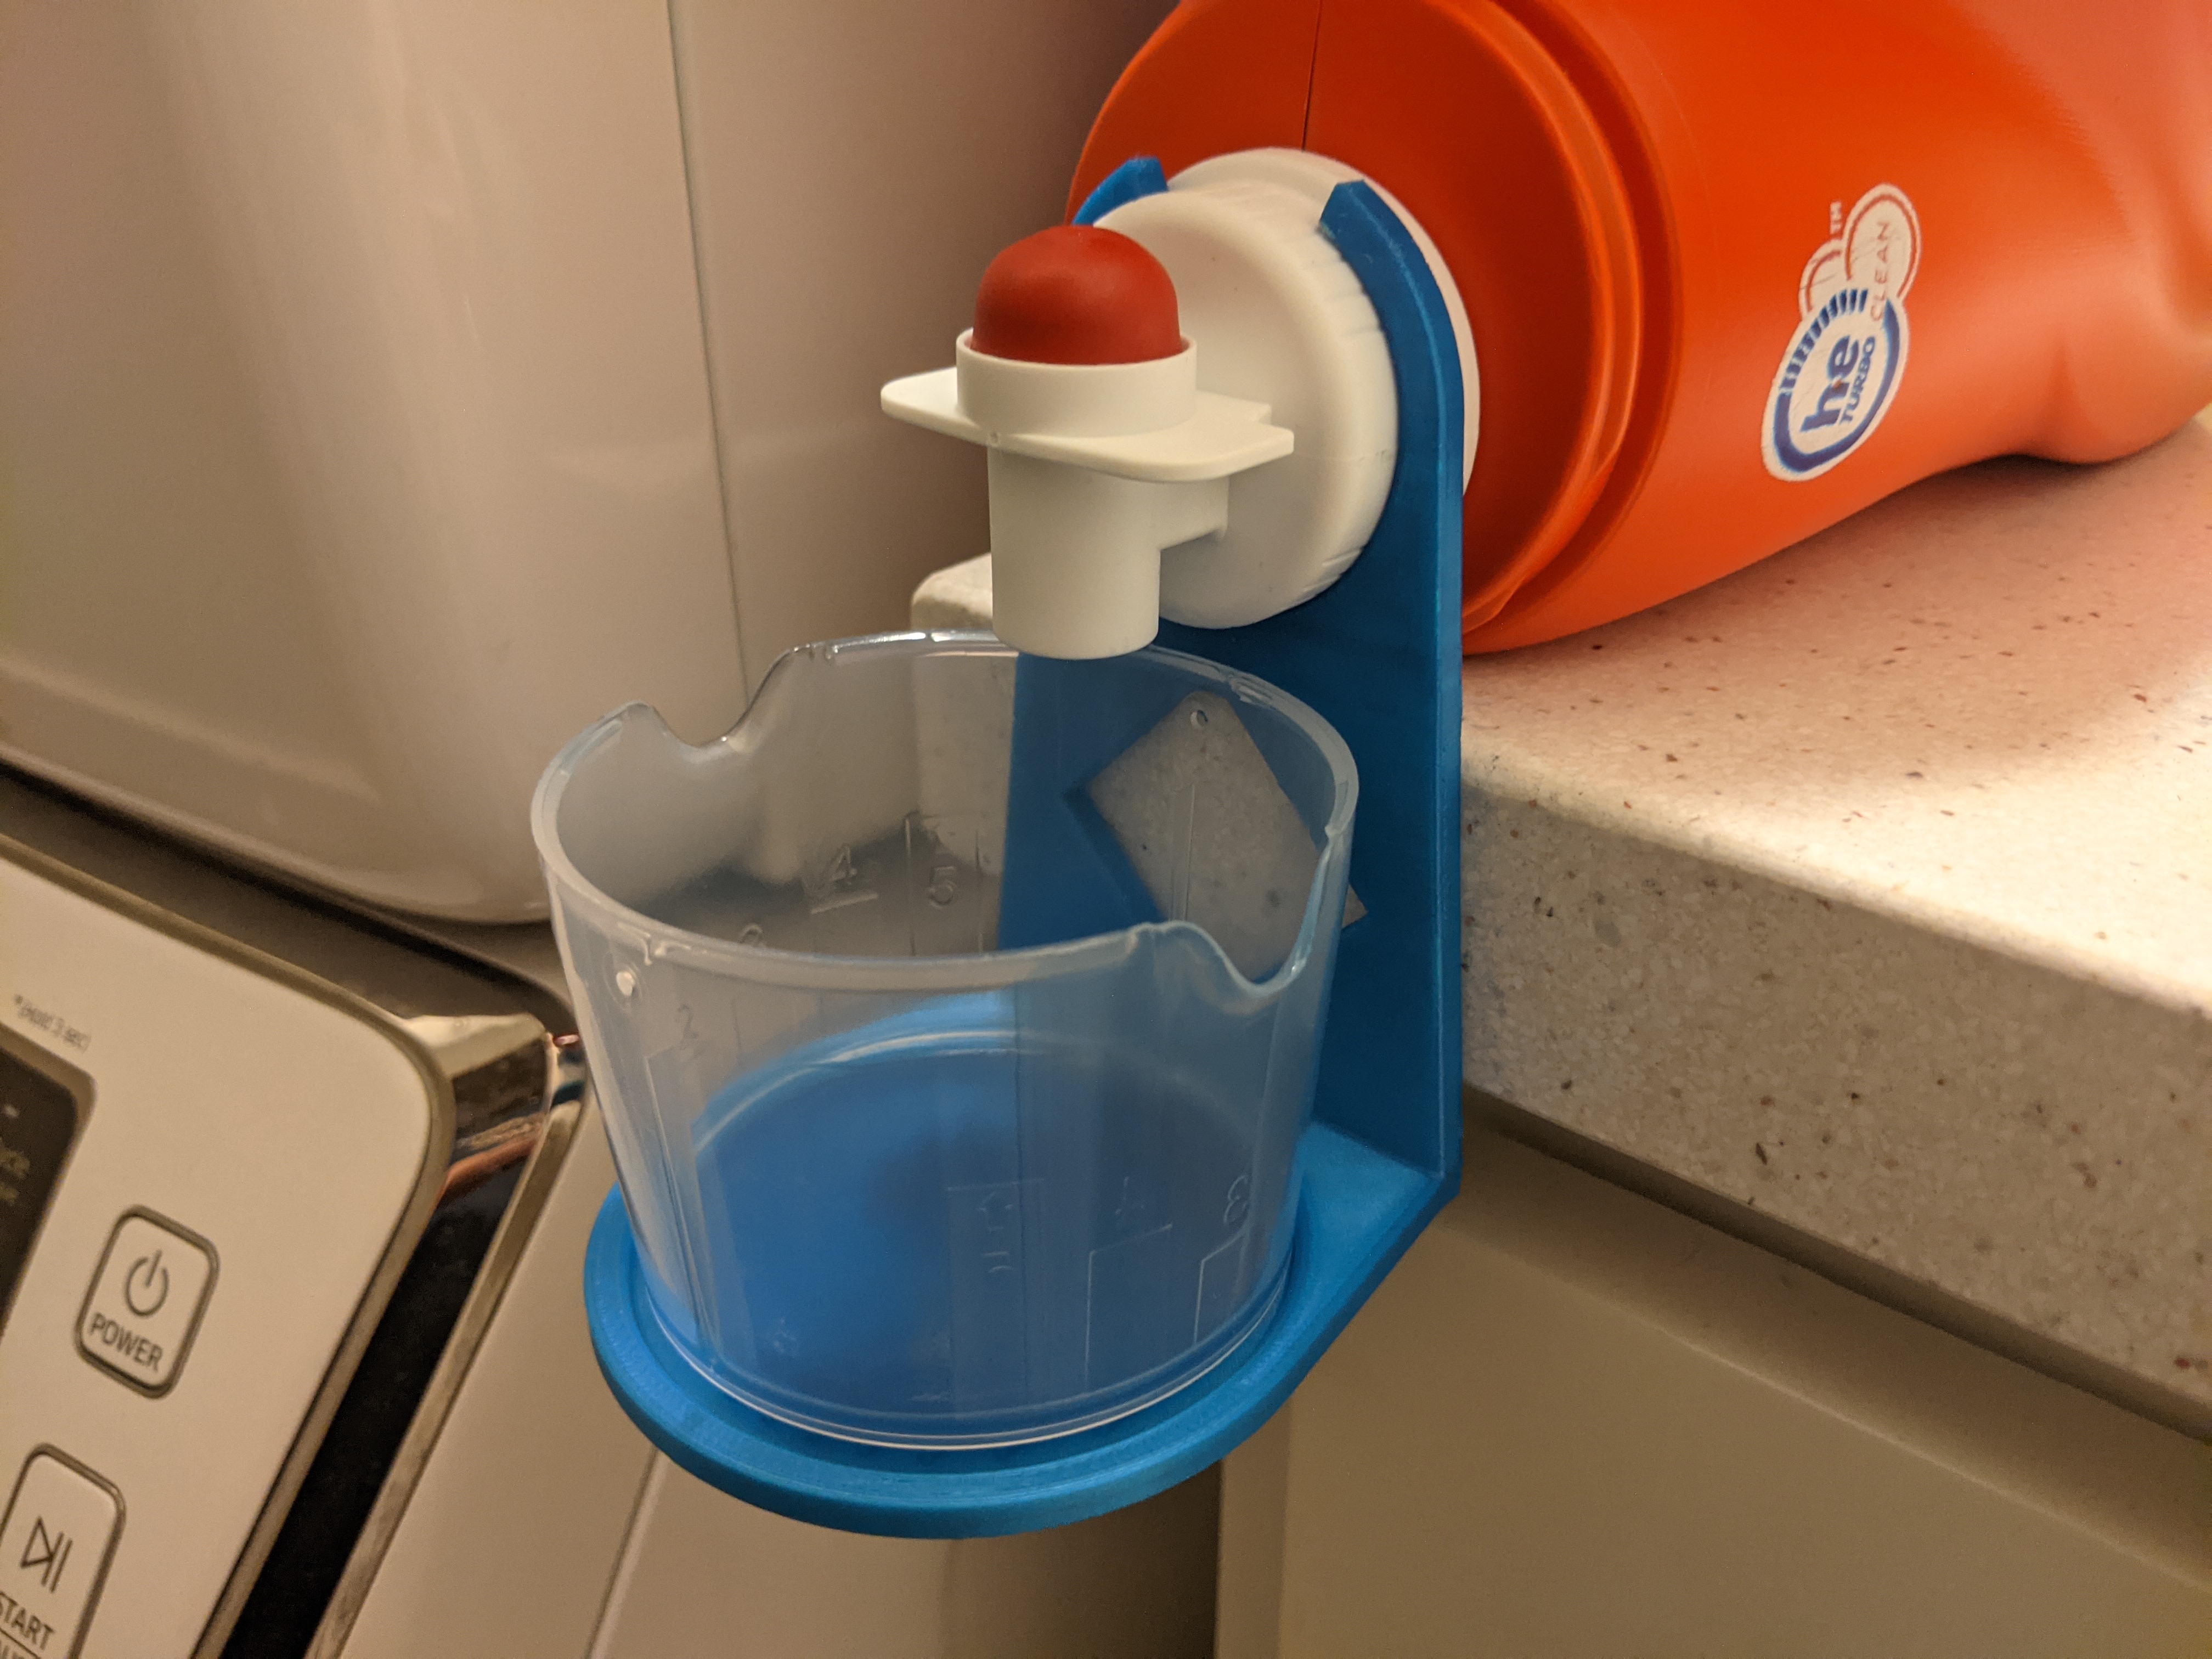 Detergent Spout Cup Holder (Parametric)